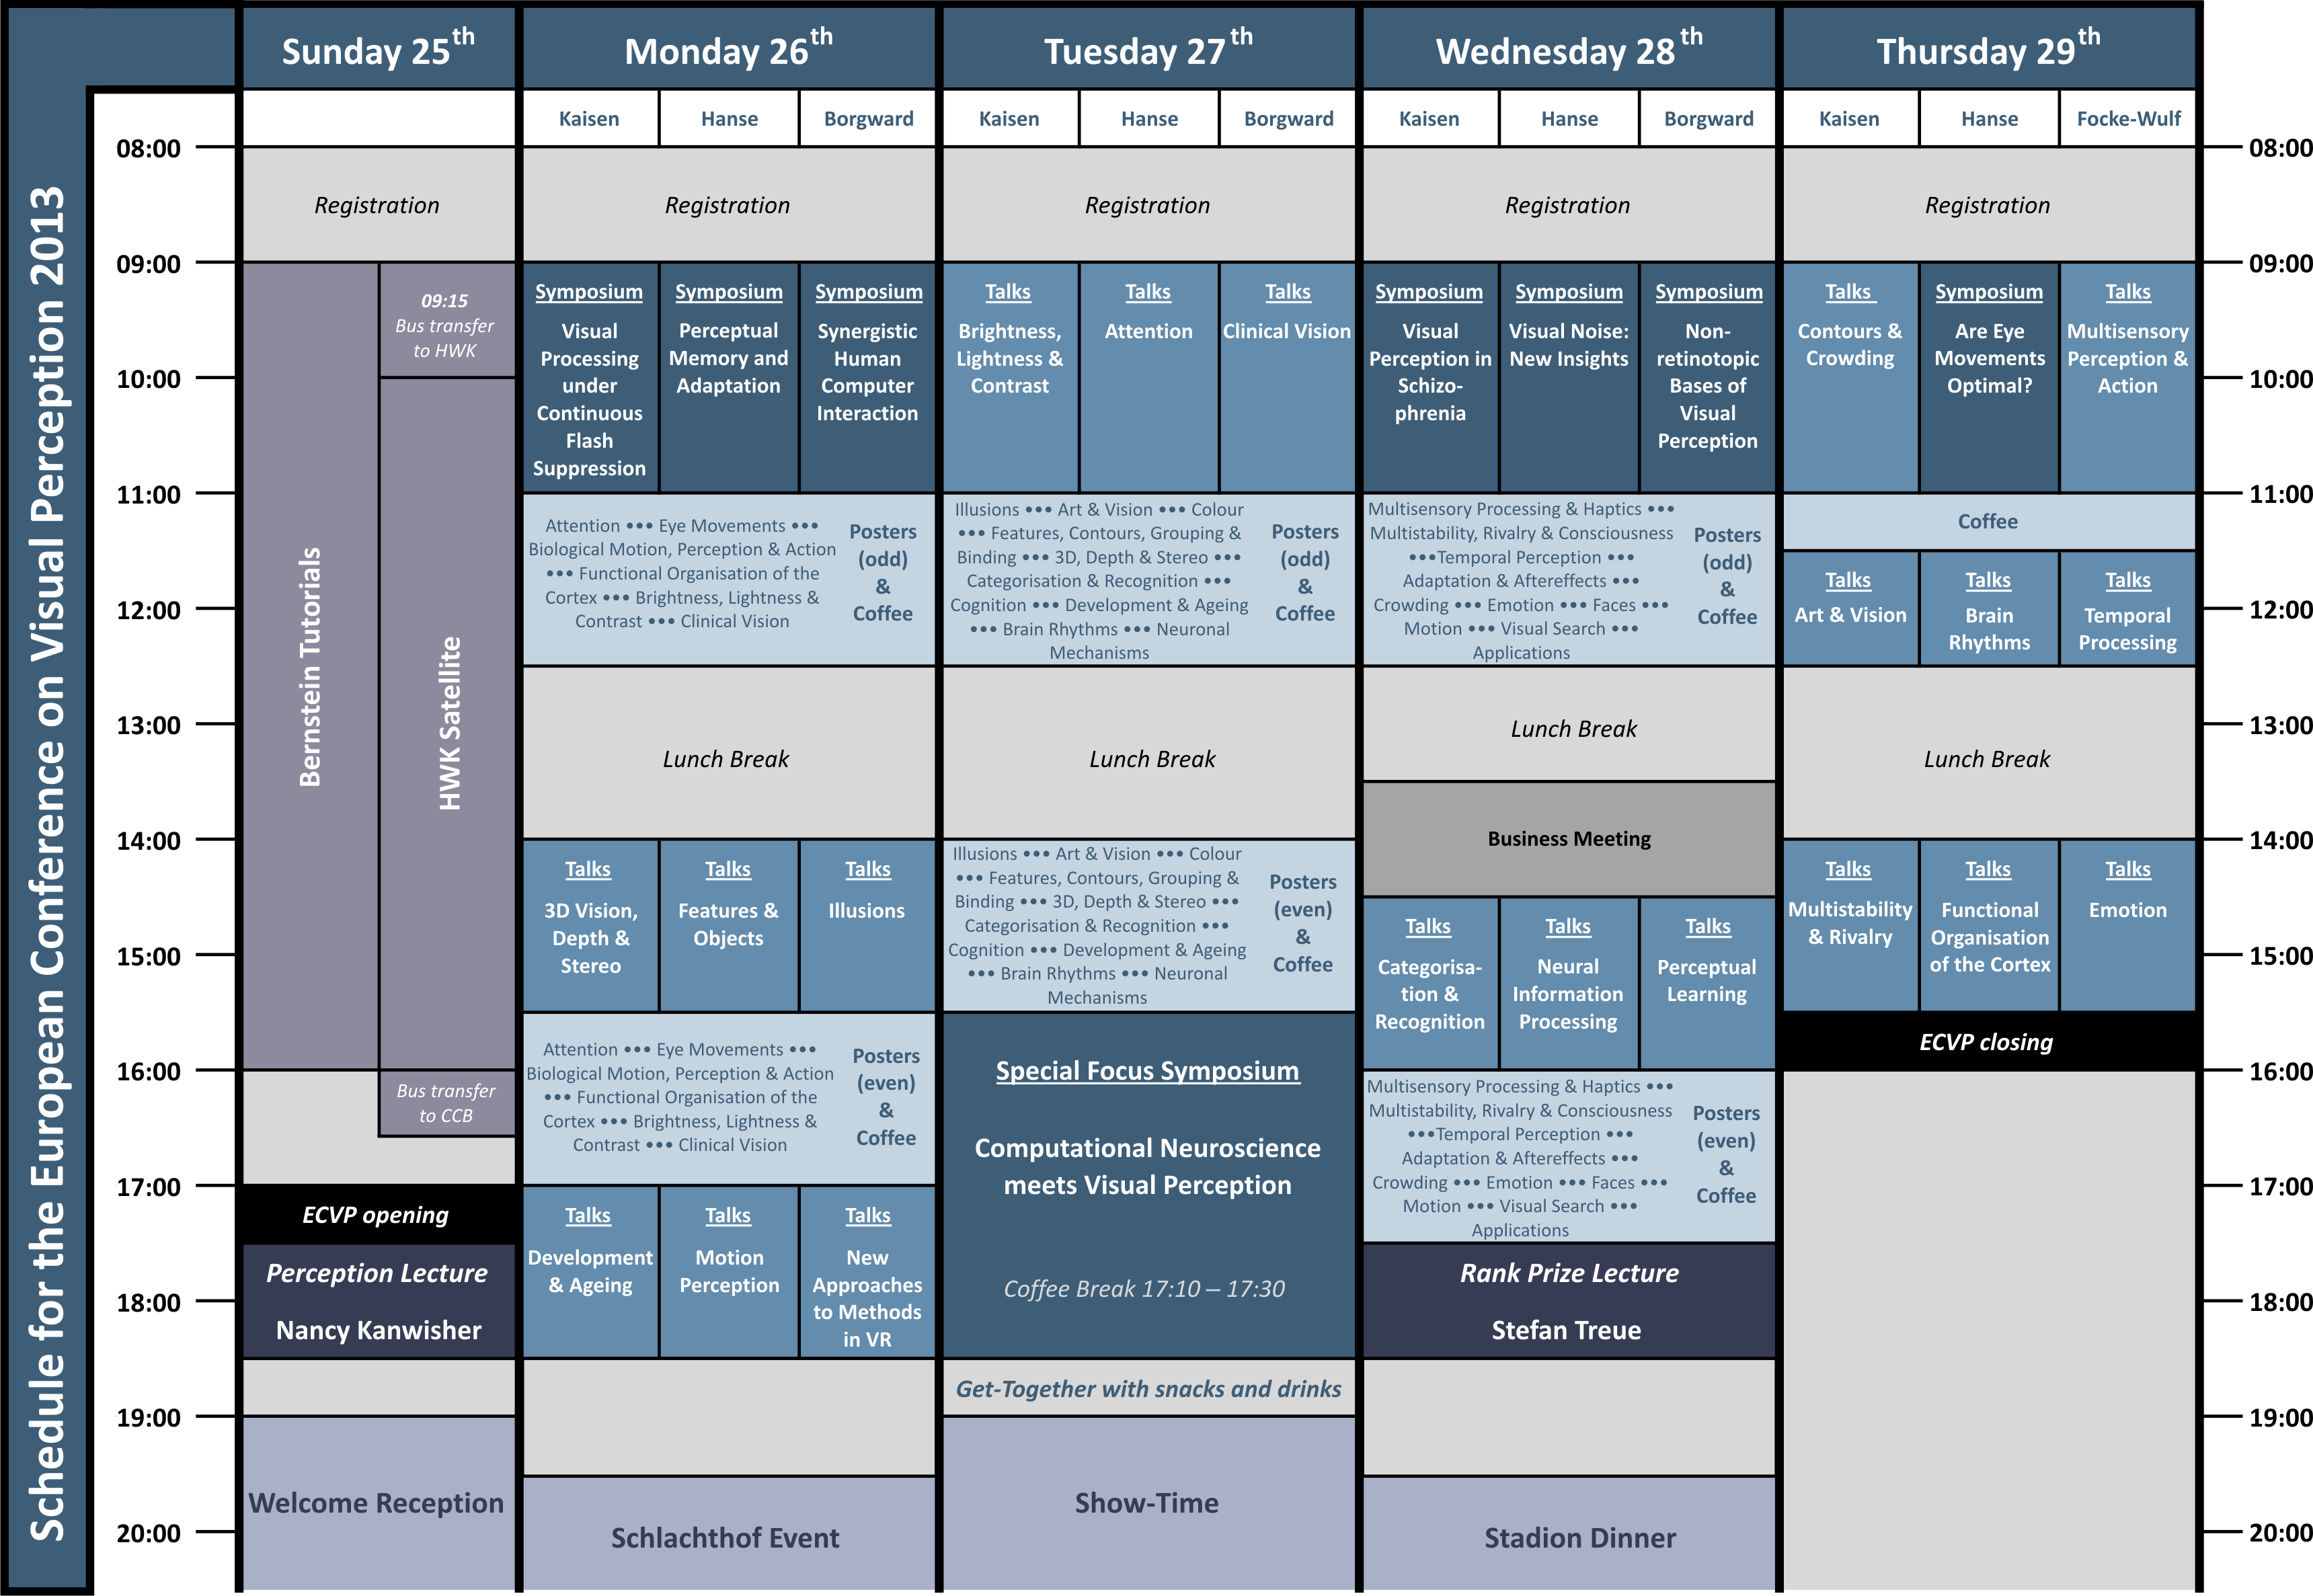 Schedule ECVP 2013